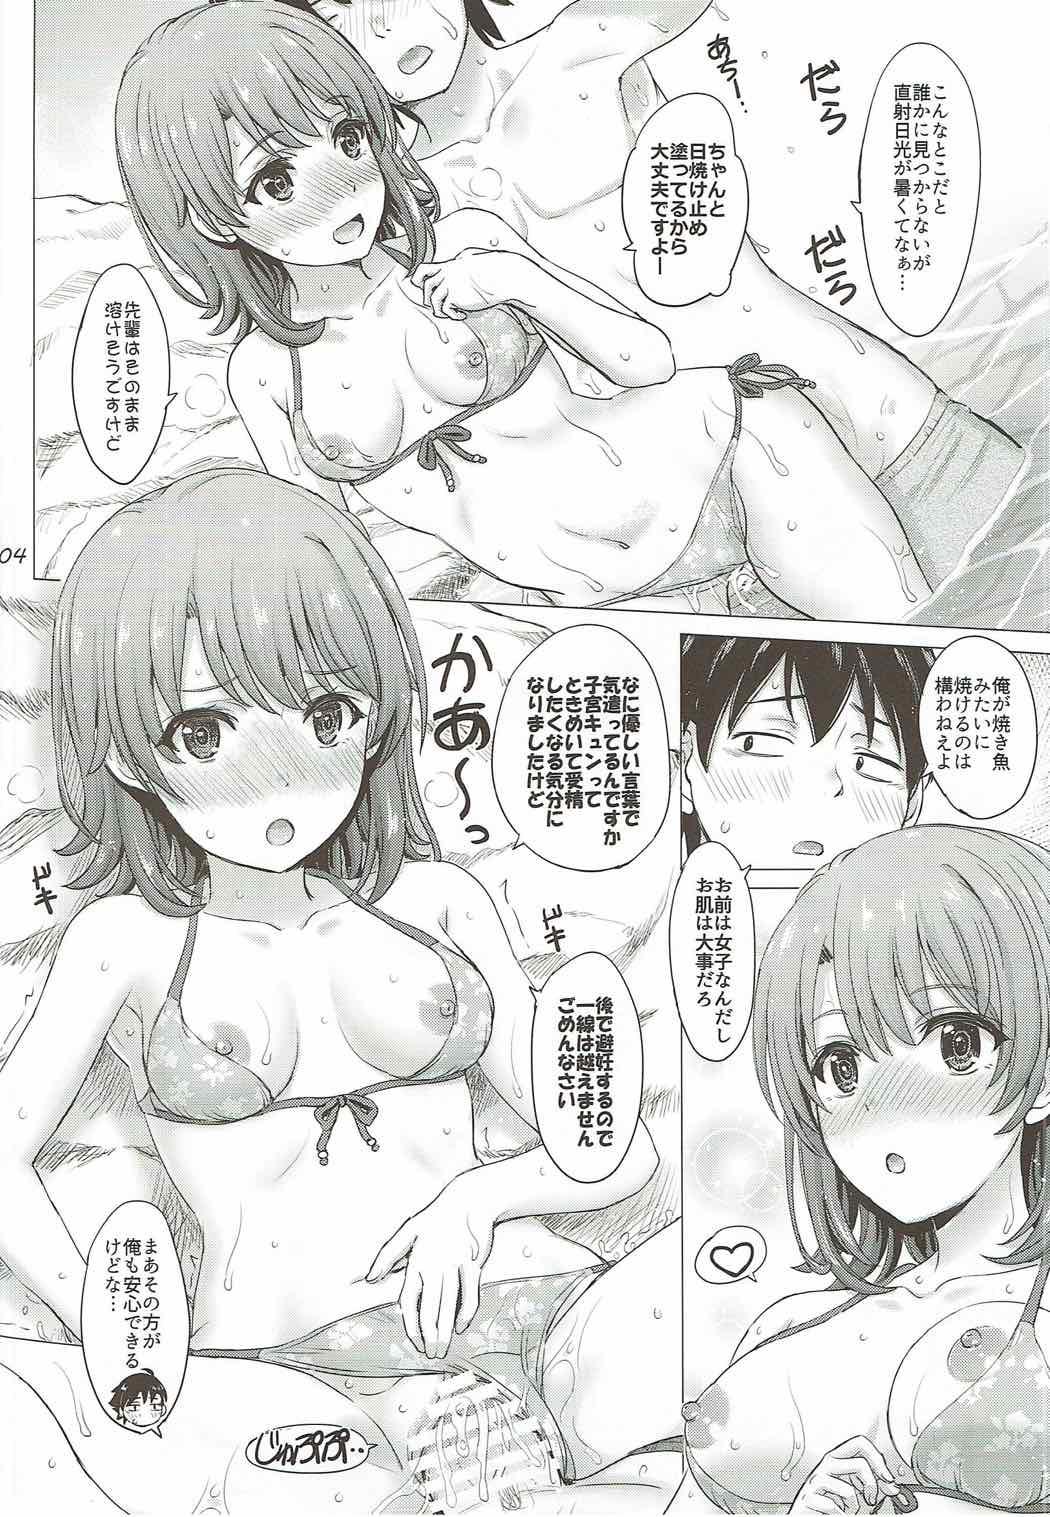 Teenage Porn Isshiki Iroha no Iyarashii Natsuyasumi. - Yahari ore no seishun love come wa machigatteiru Masturbando - Page 3